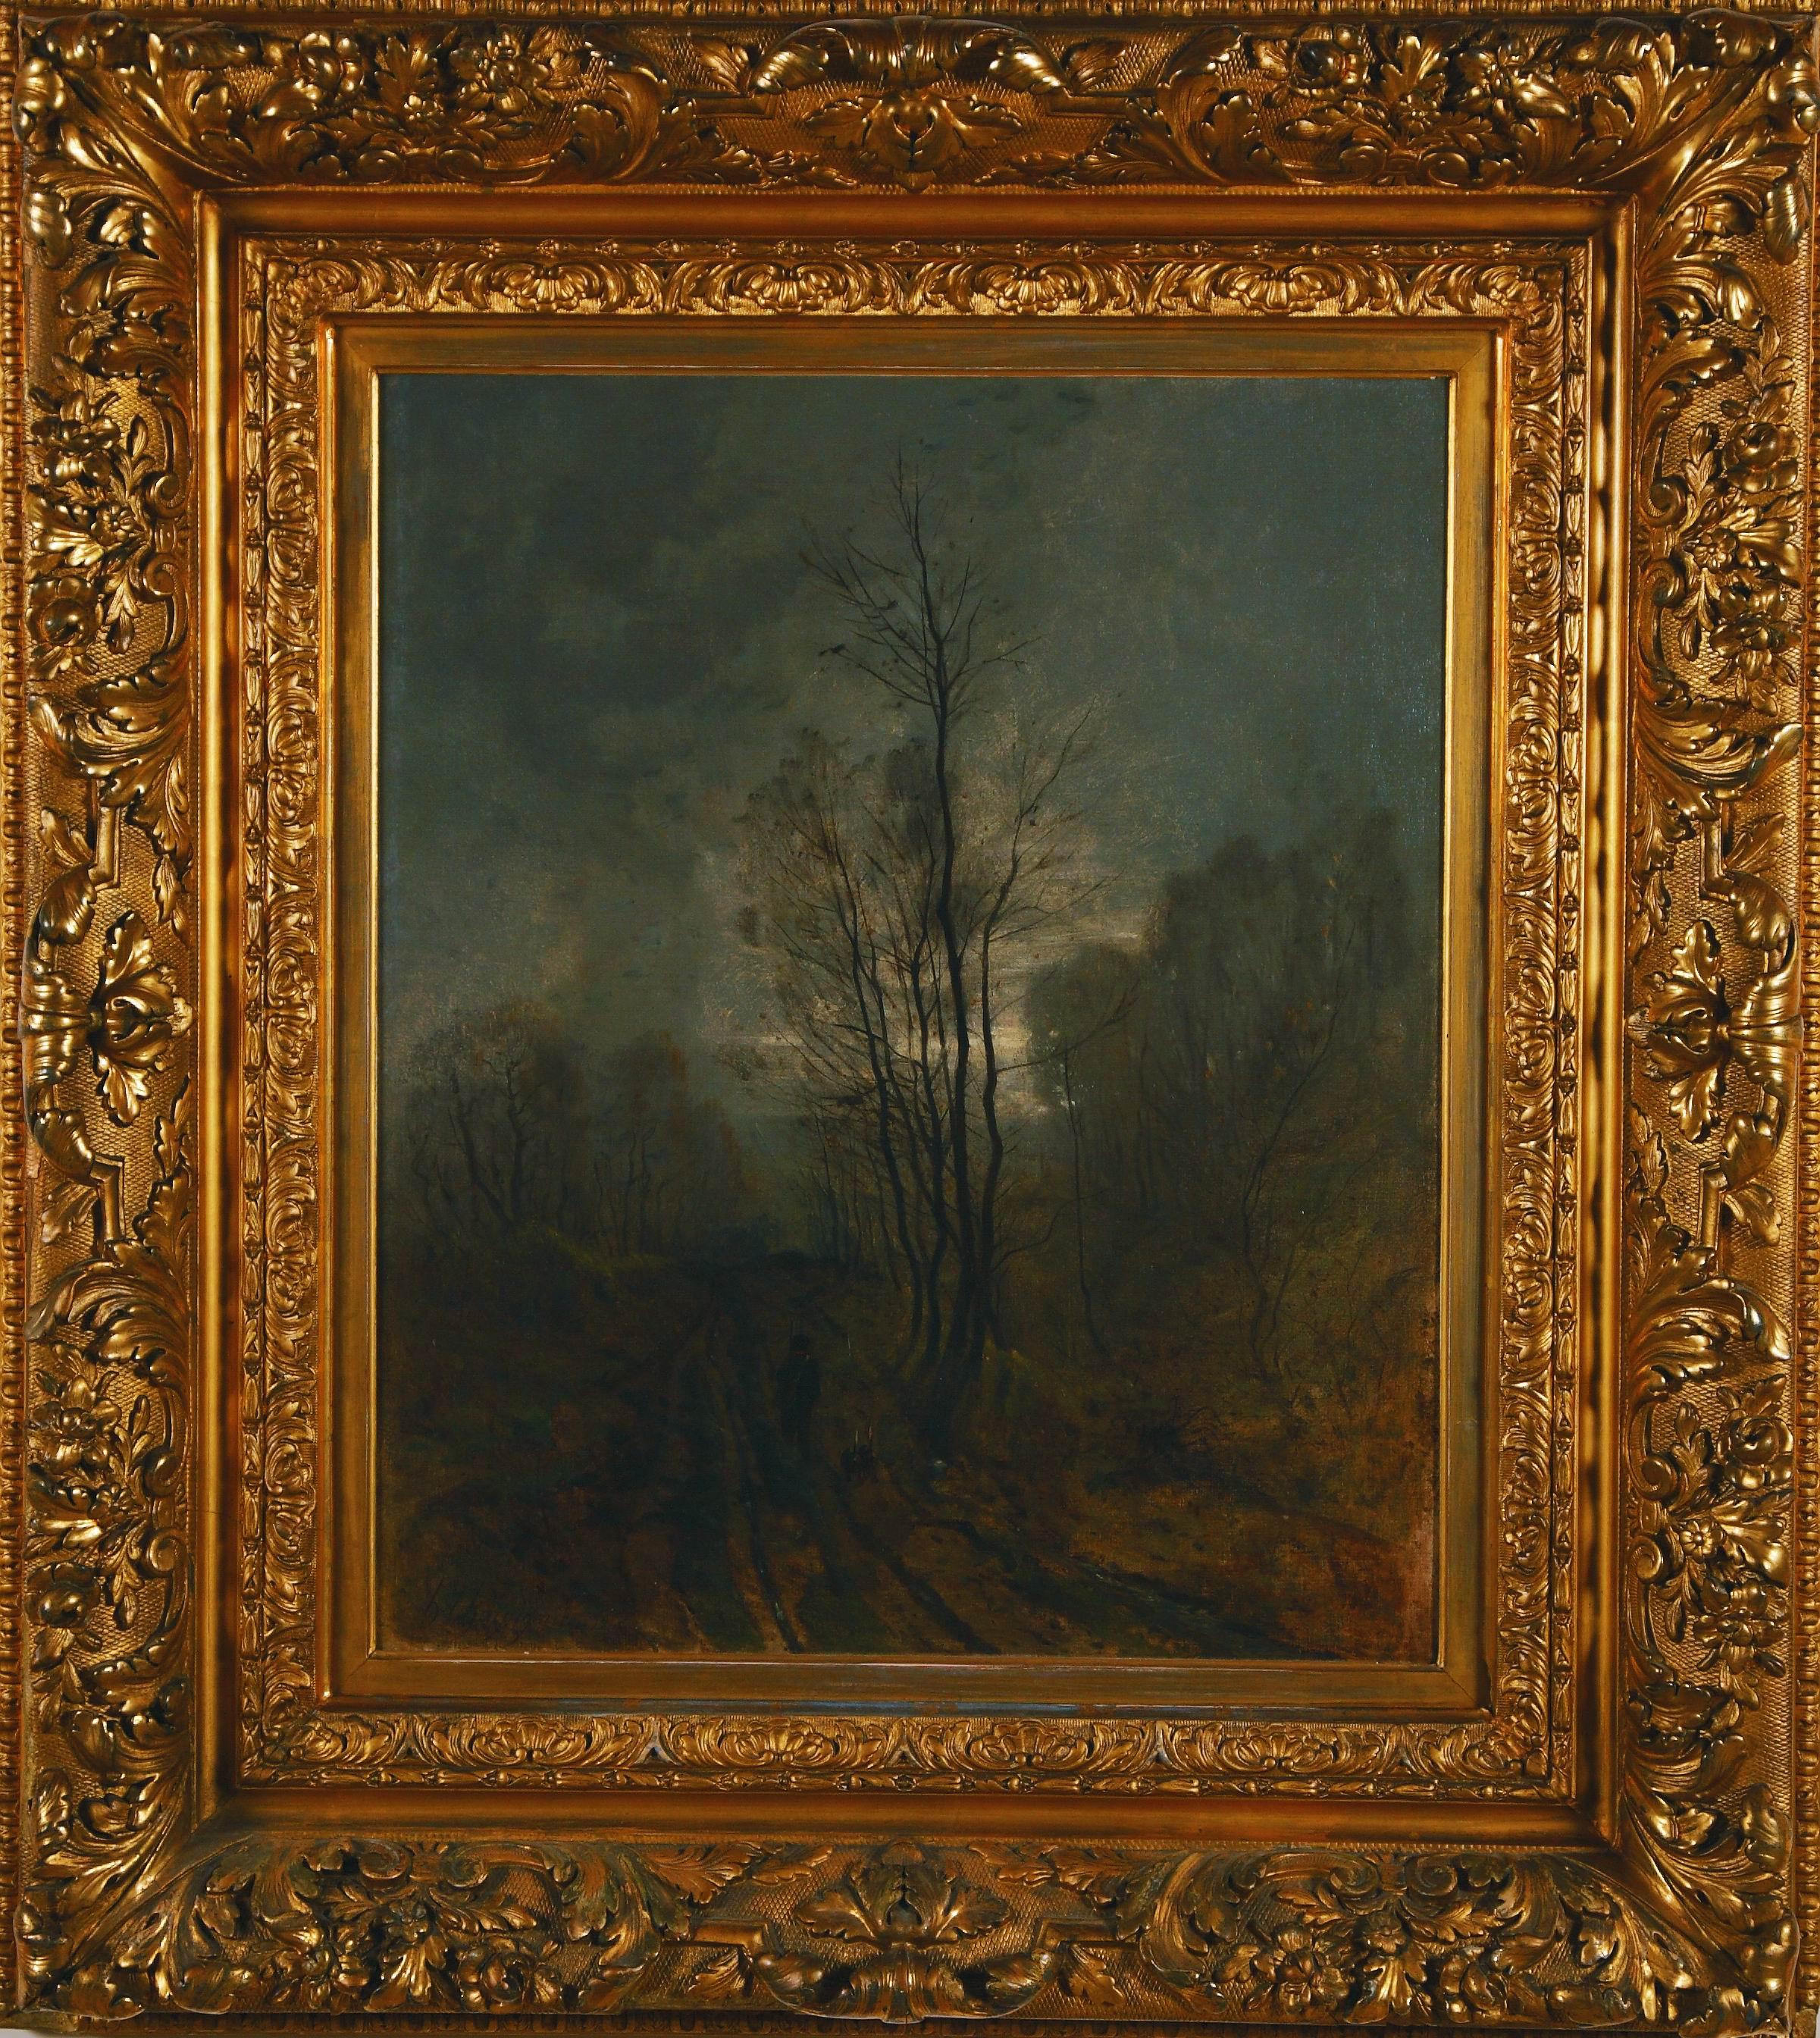 Landscape Painting Henri Joseph Harpignies - Peinture à l'huile originale de Harpignies « Paysage à Twilight » (landscape at Twilight)